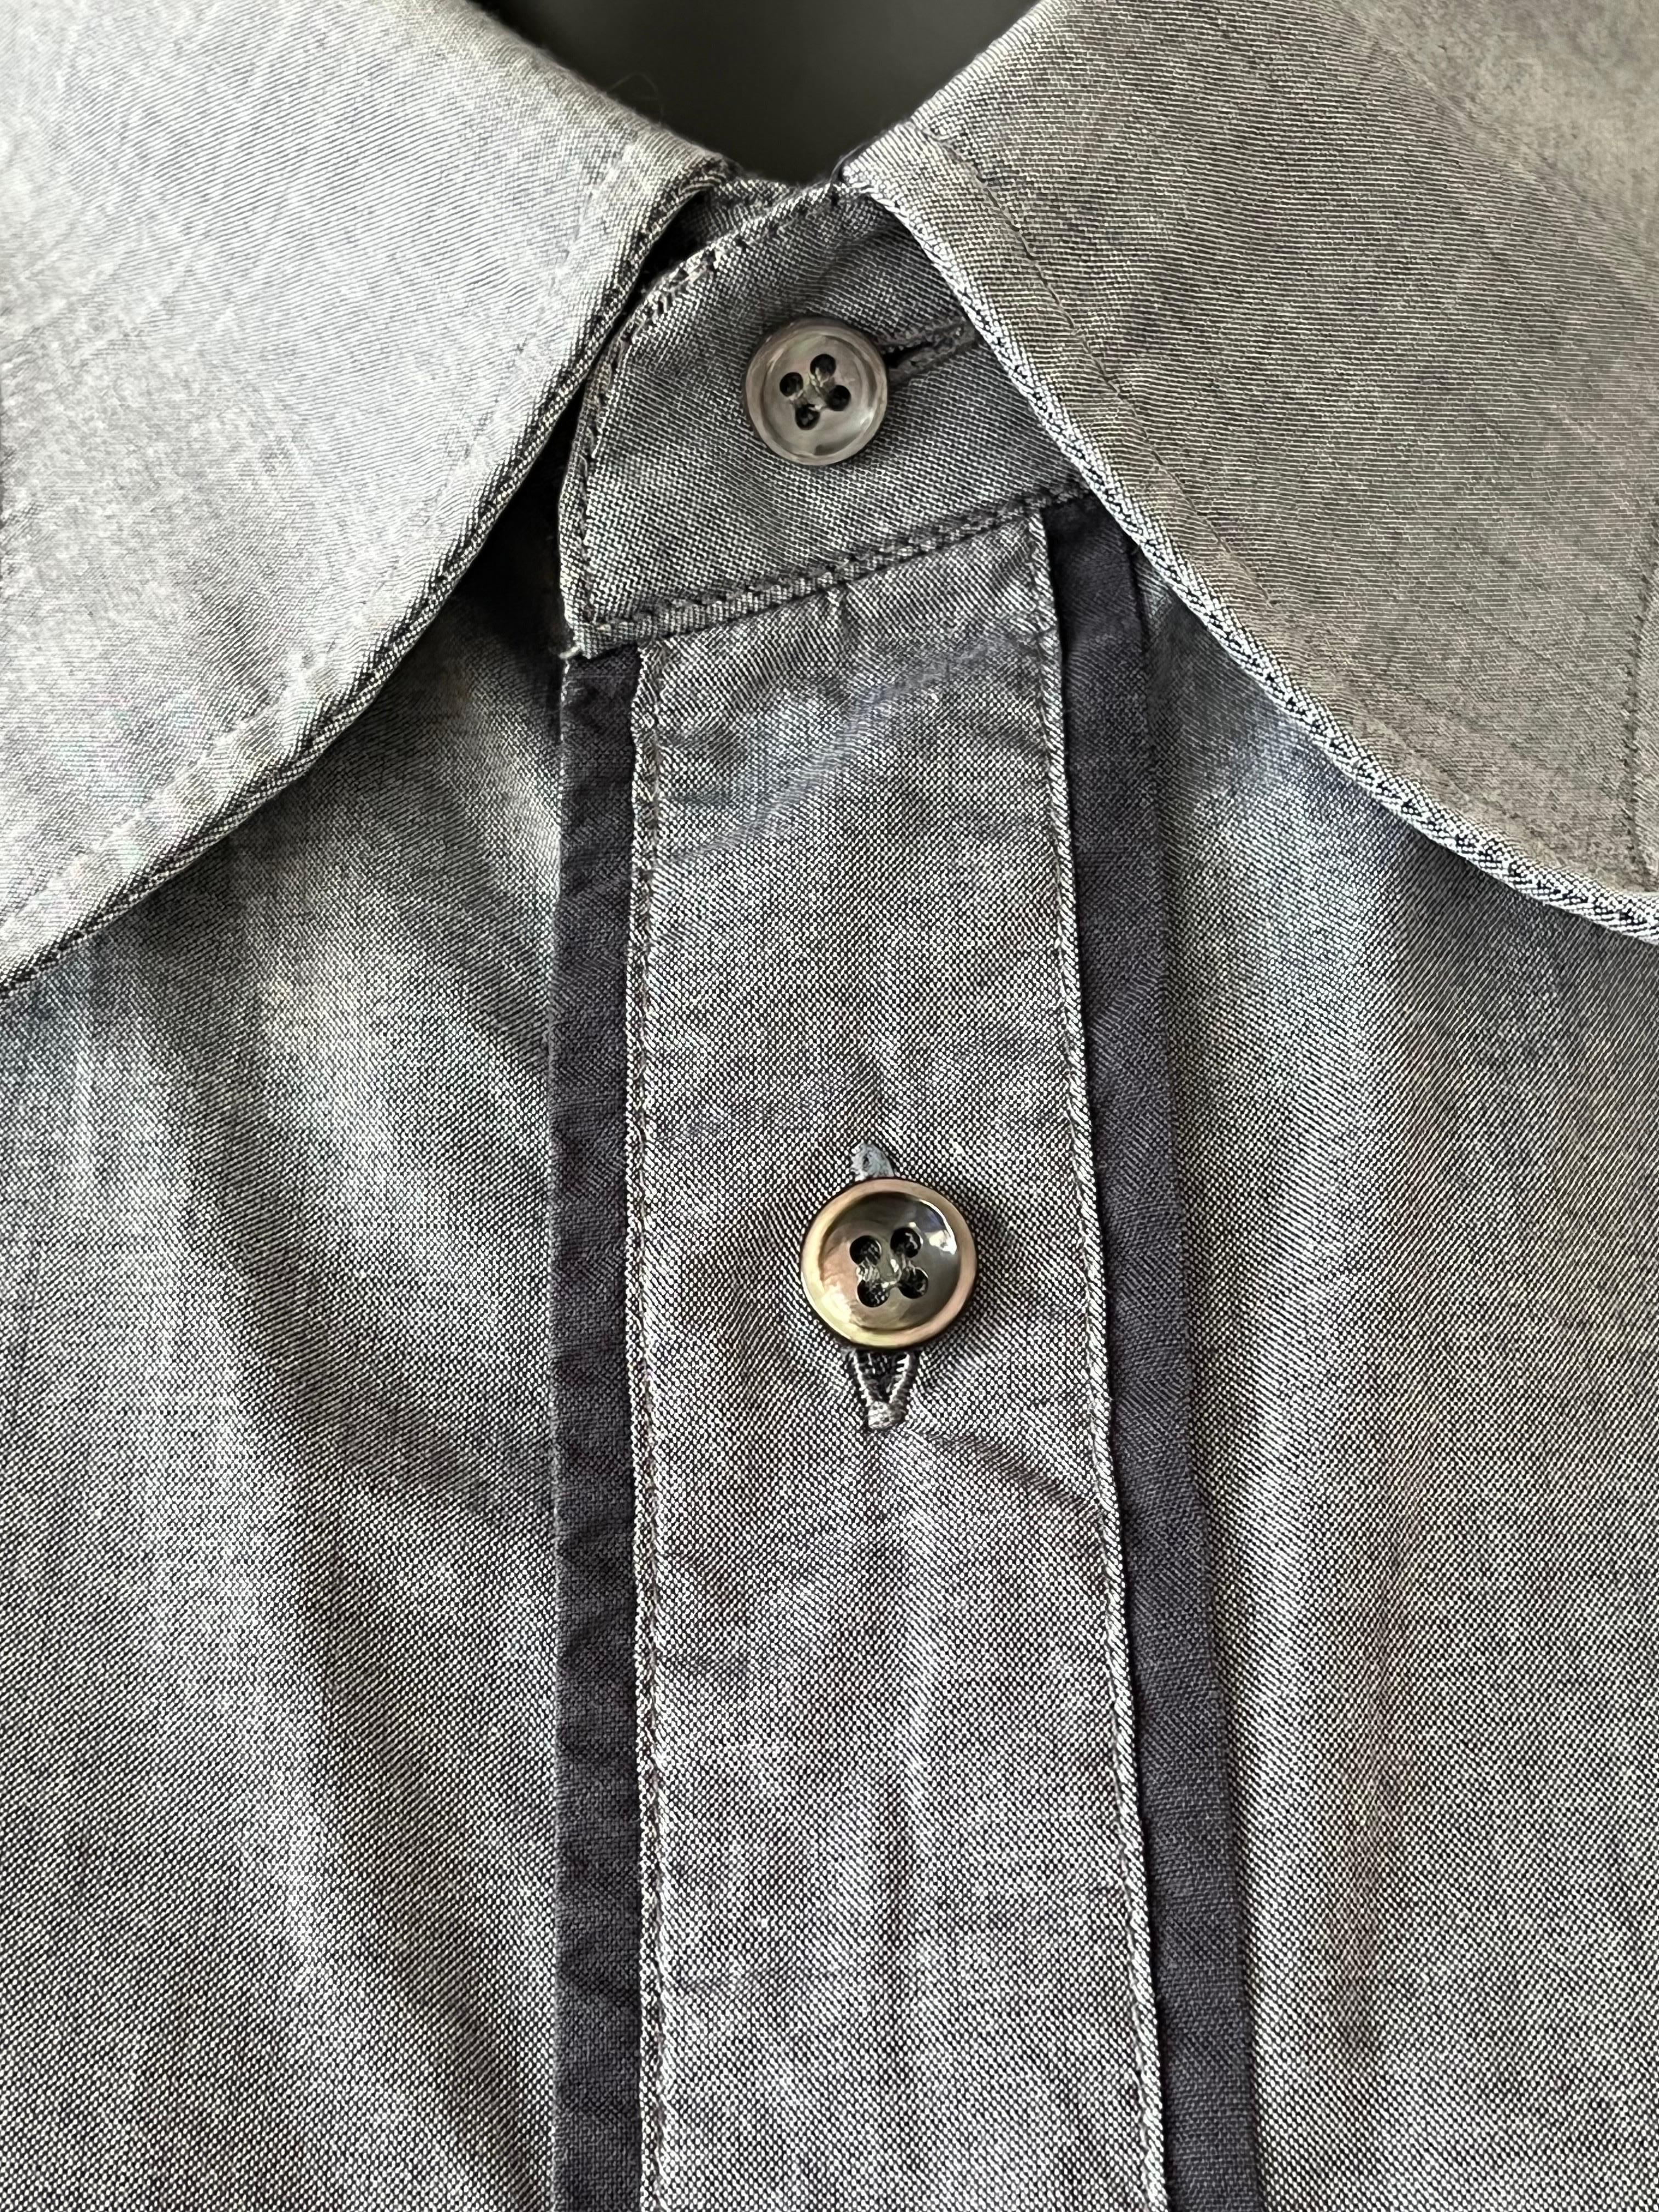 Chemise pour homme de Maison Martin Martin en gris pâle et bordures noires contrastées. Pièce iconique en très bon état.